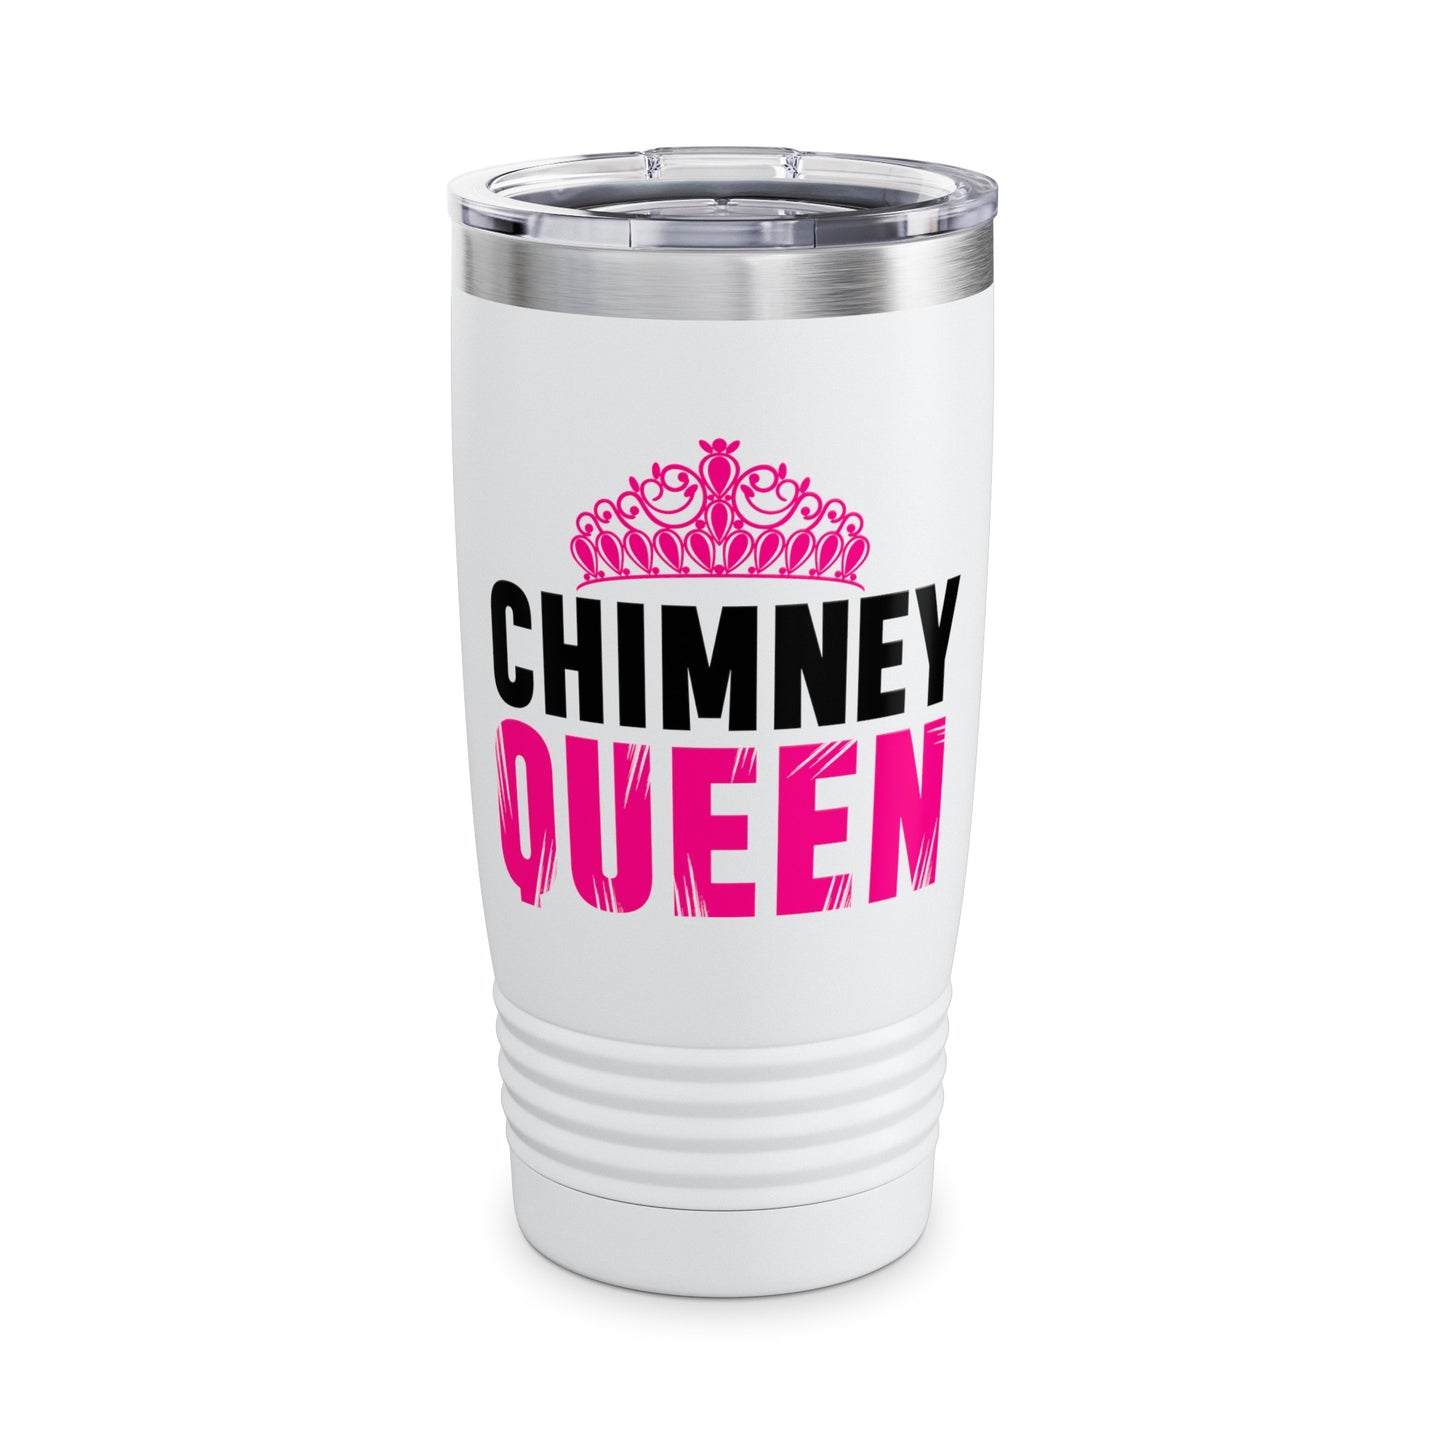 Chimney Queen Tumbler